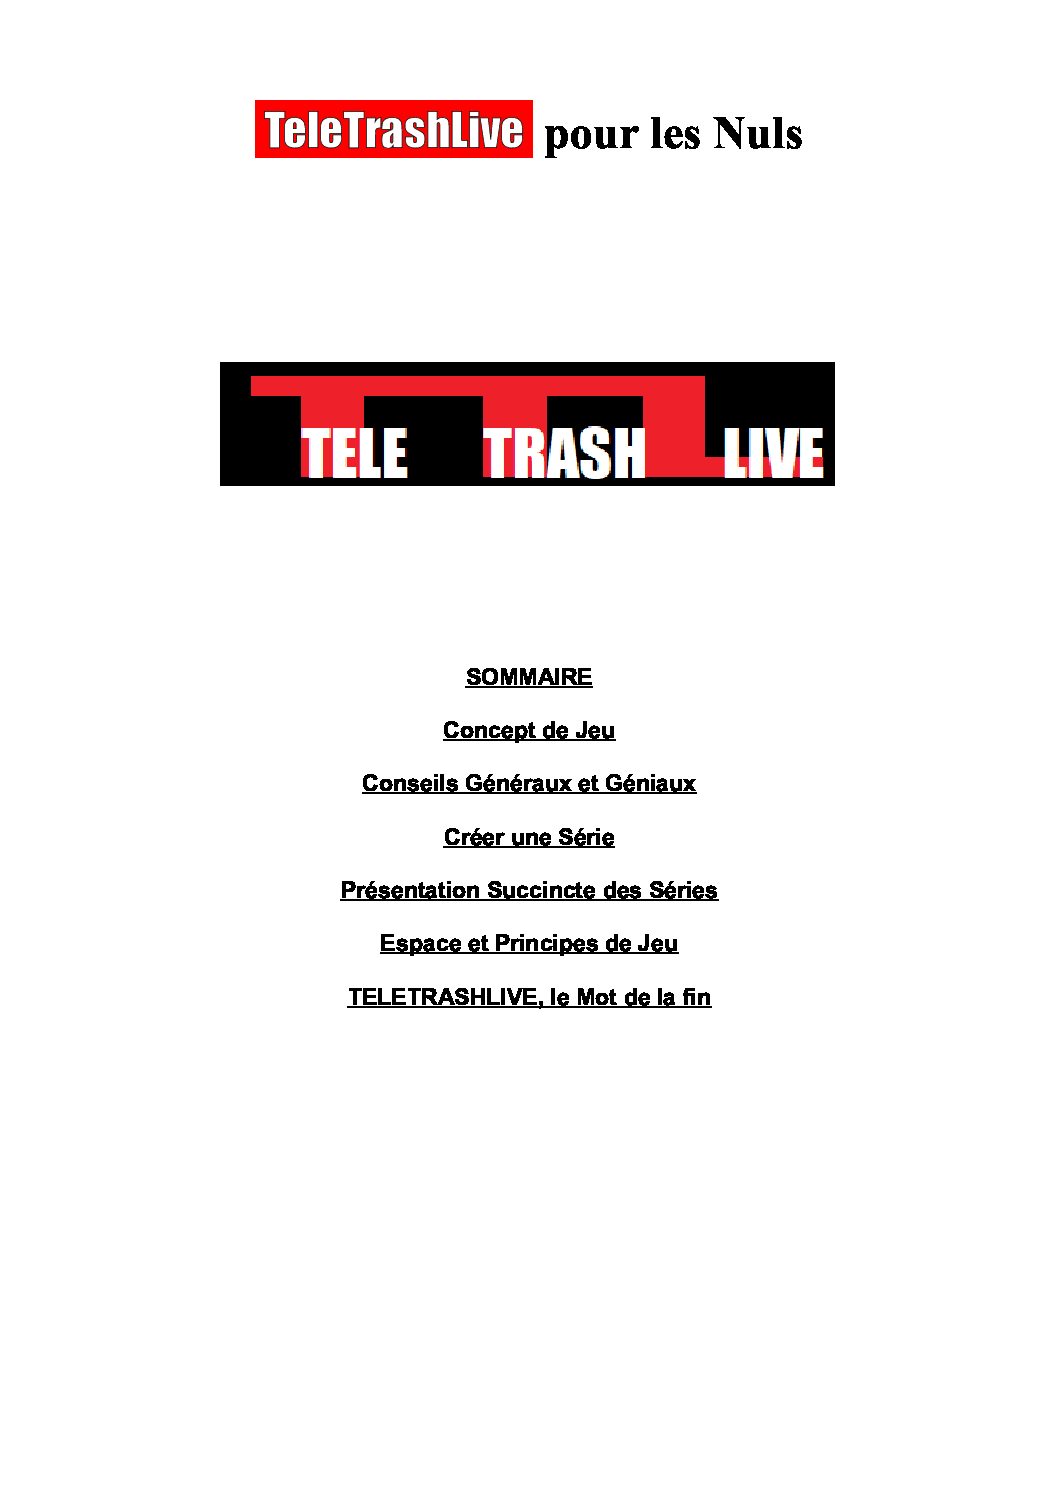 Jeu de rôle court : TeleTrashLive par Seb le Noir